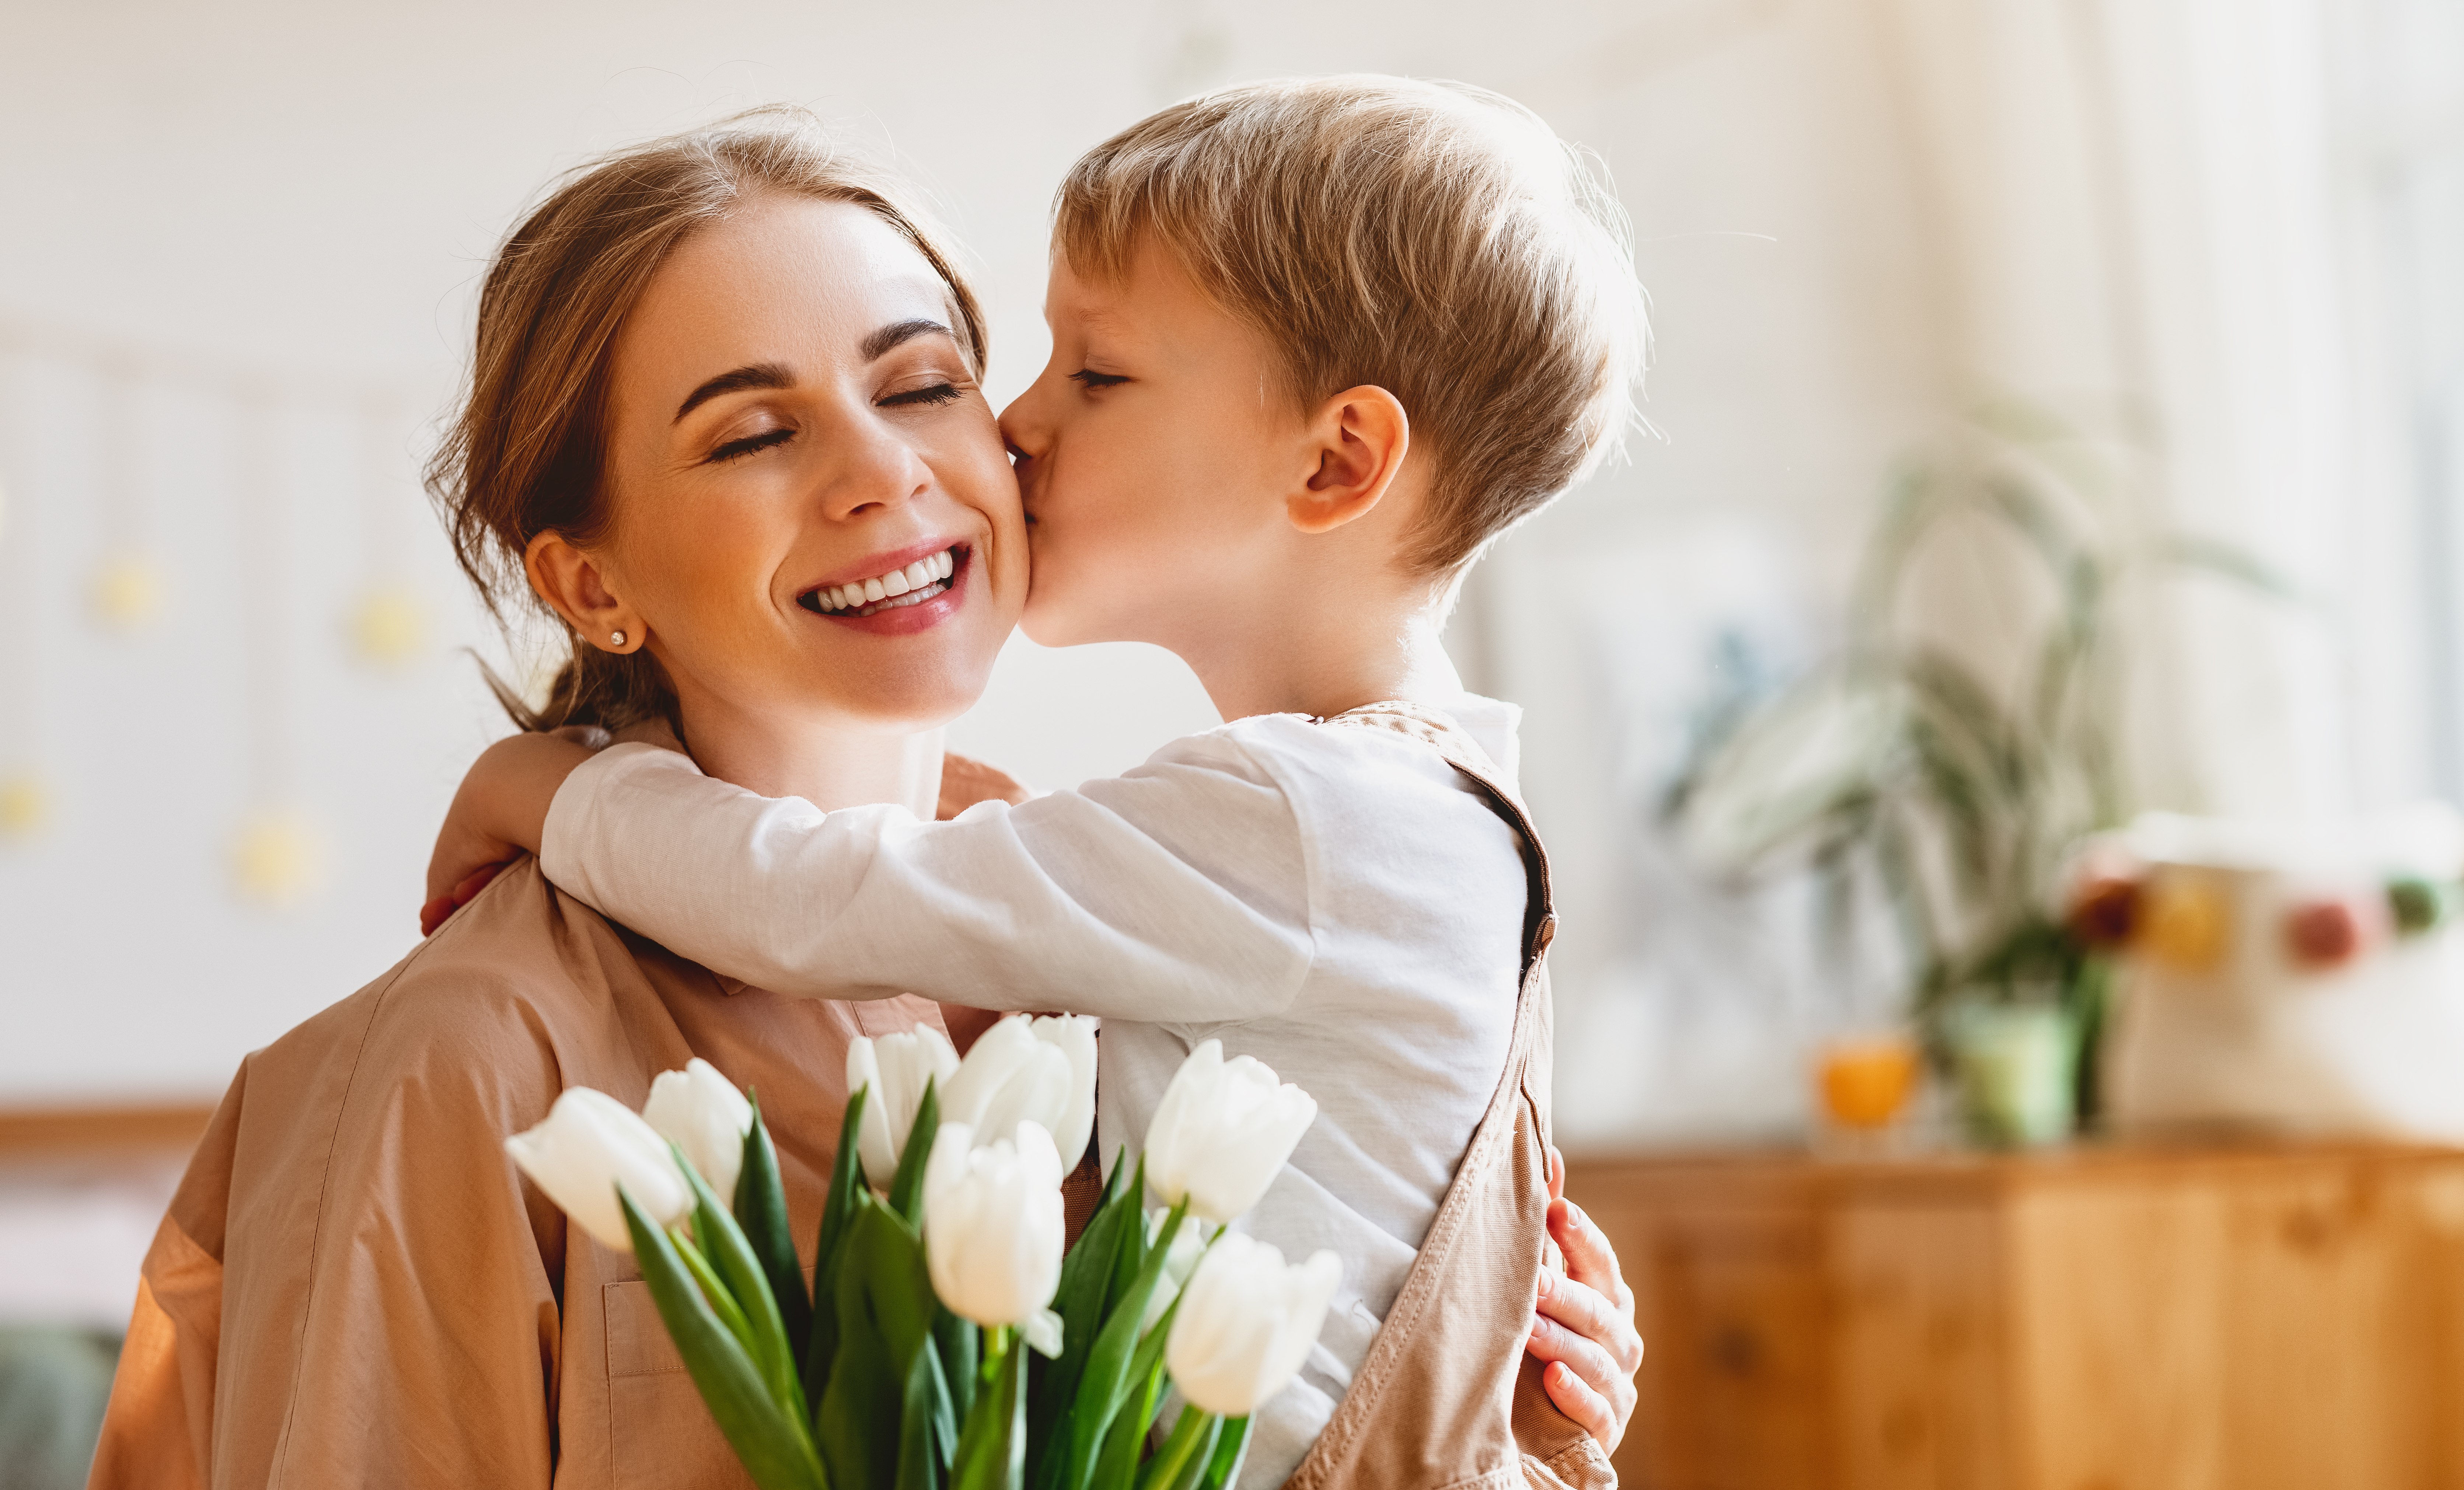 Une mère qui ferme les yeux et tient un bouquet de tulipes pendant que son fils l'embrasse sur la joue | Source : Shutterstock